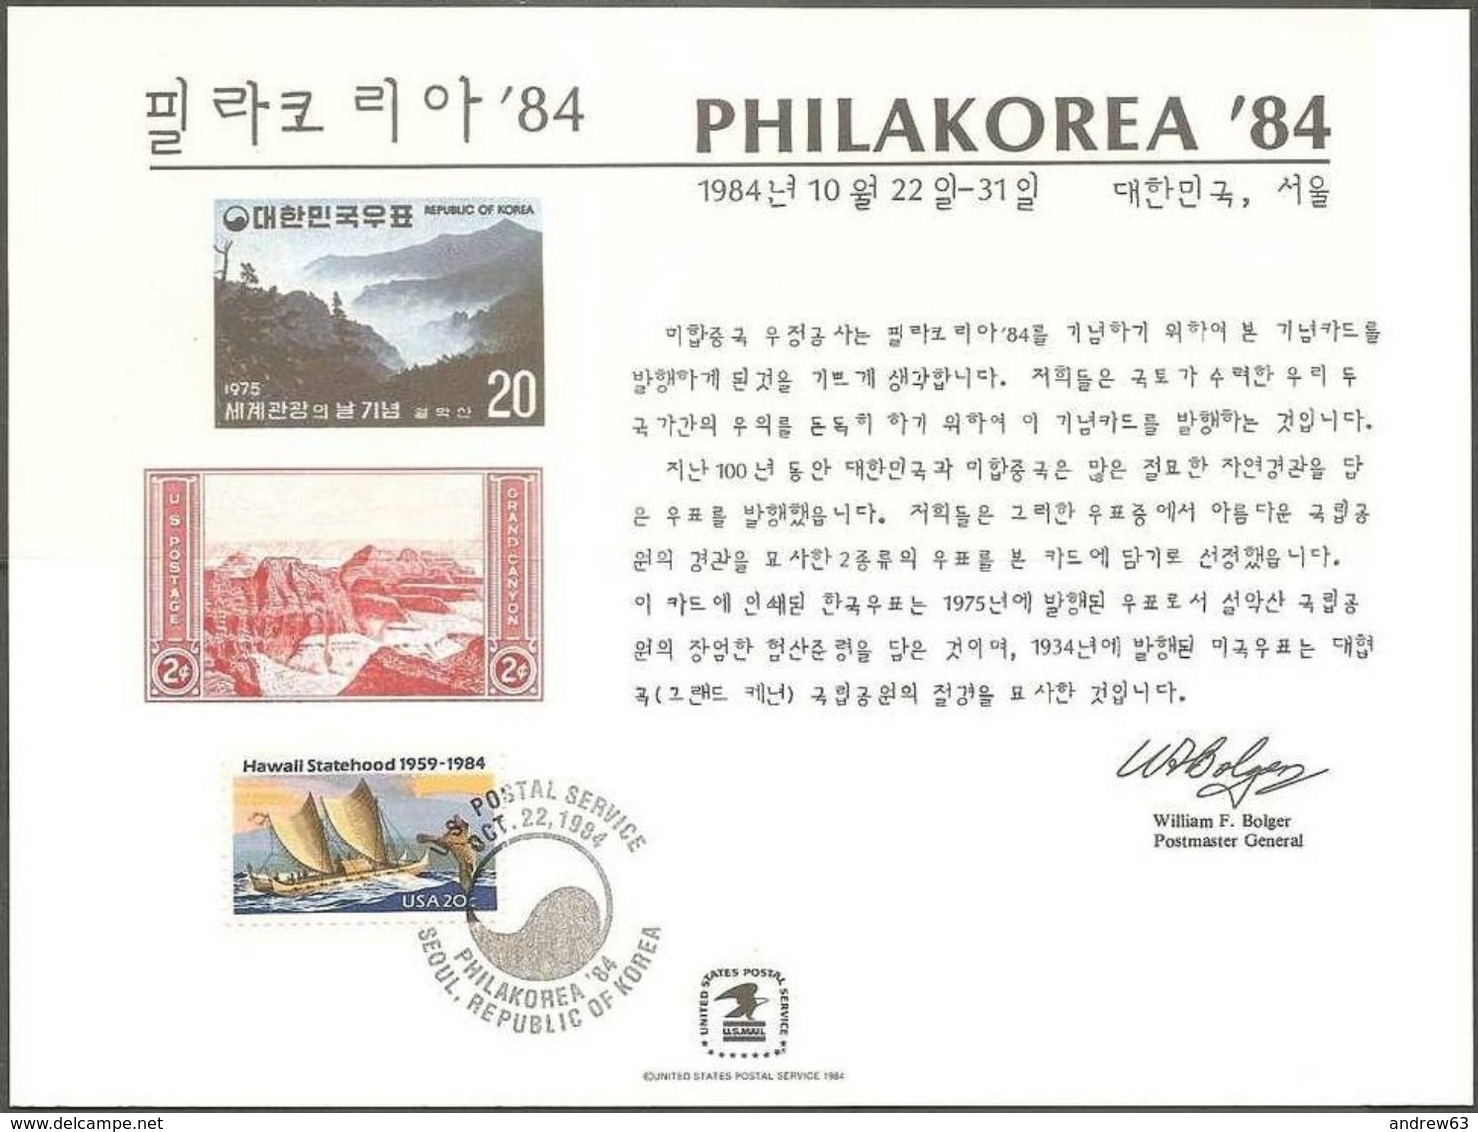 STATI UNITI - USA - 1984 - Cancelled Souvenir Card - Philakorea '84 - Souvenirs & Special Cards